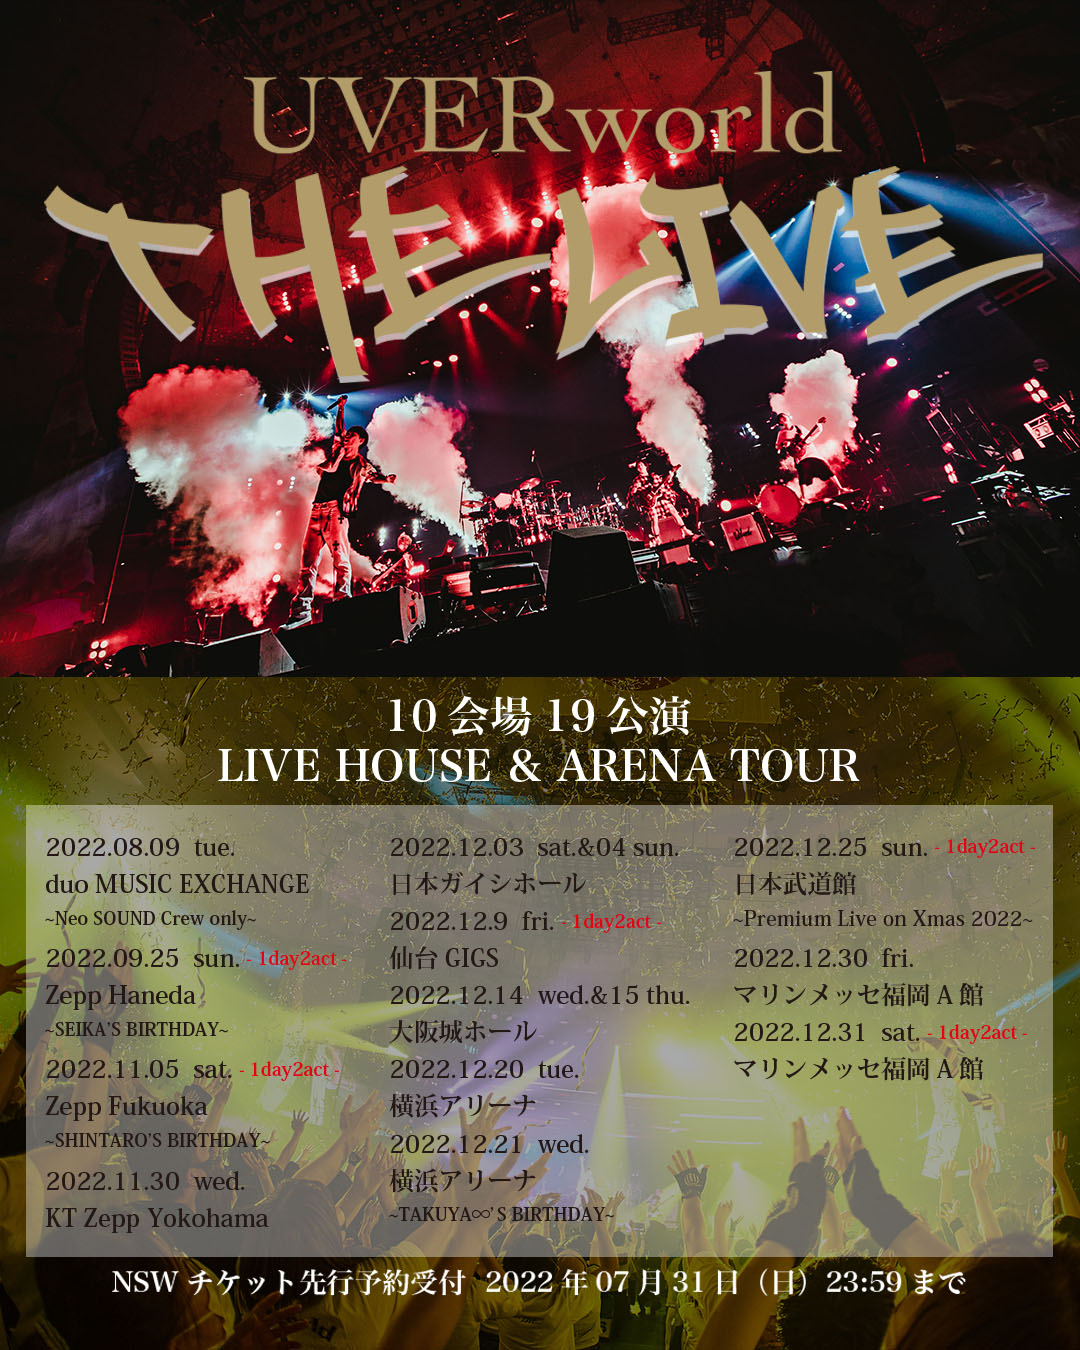 【LIVE】UVERworld “THE LIVE” /LIVE HOUSE & ARENA TOUR開催決定